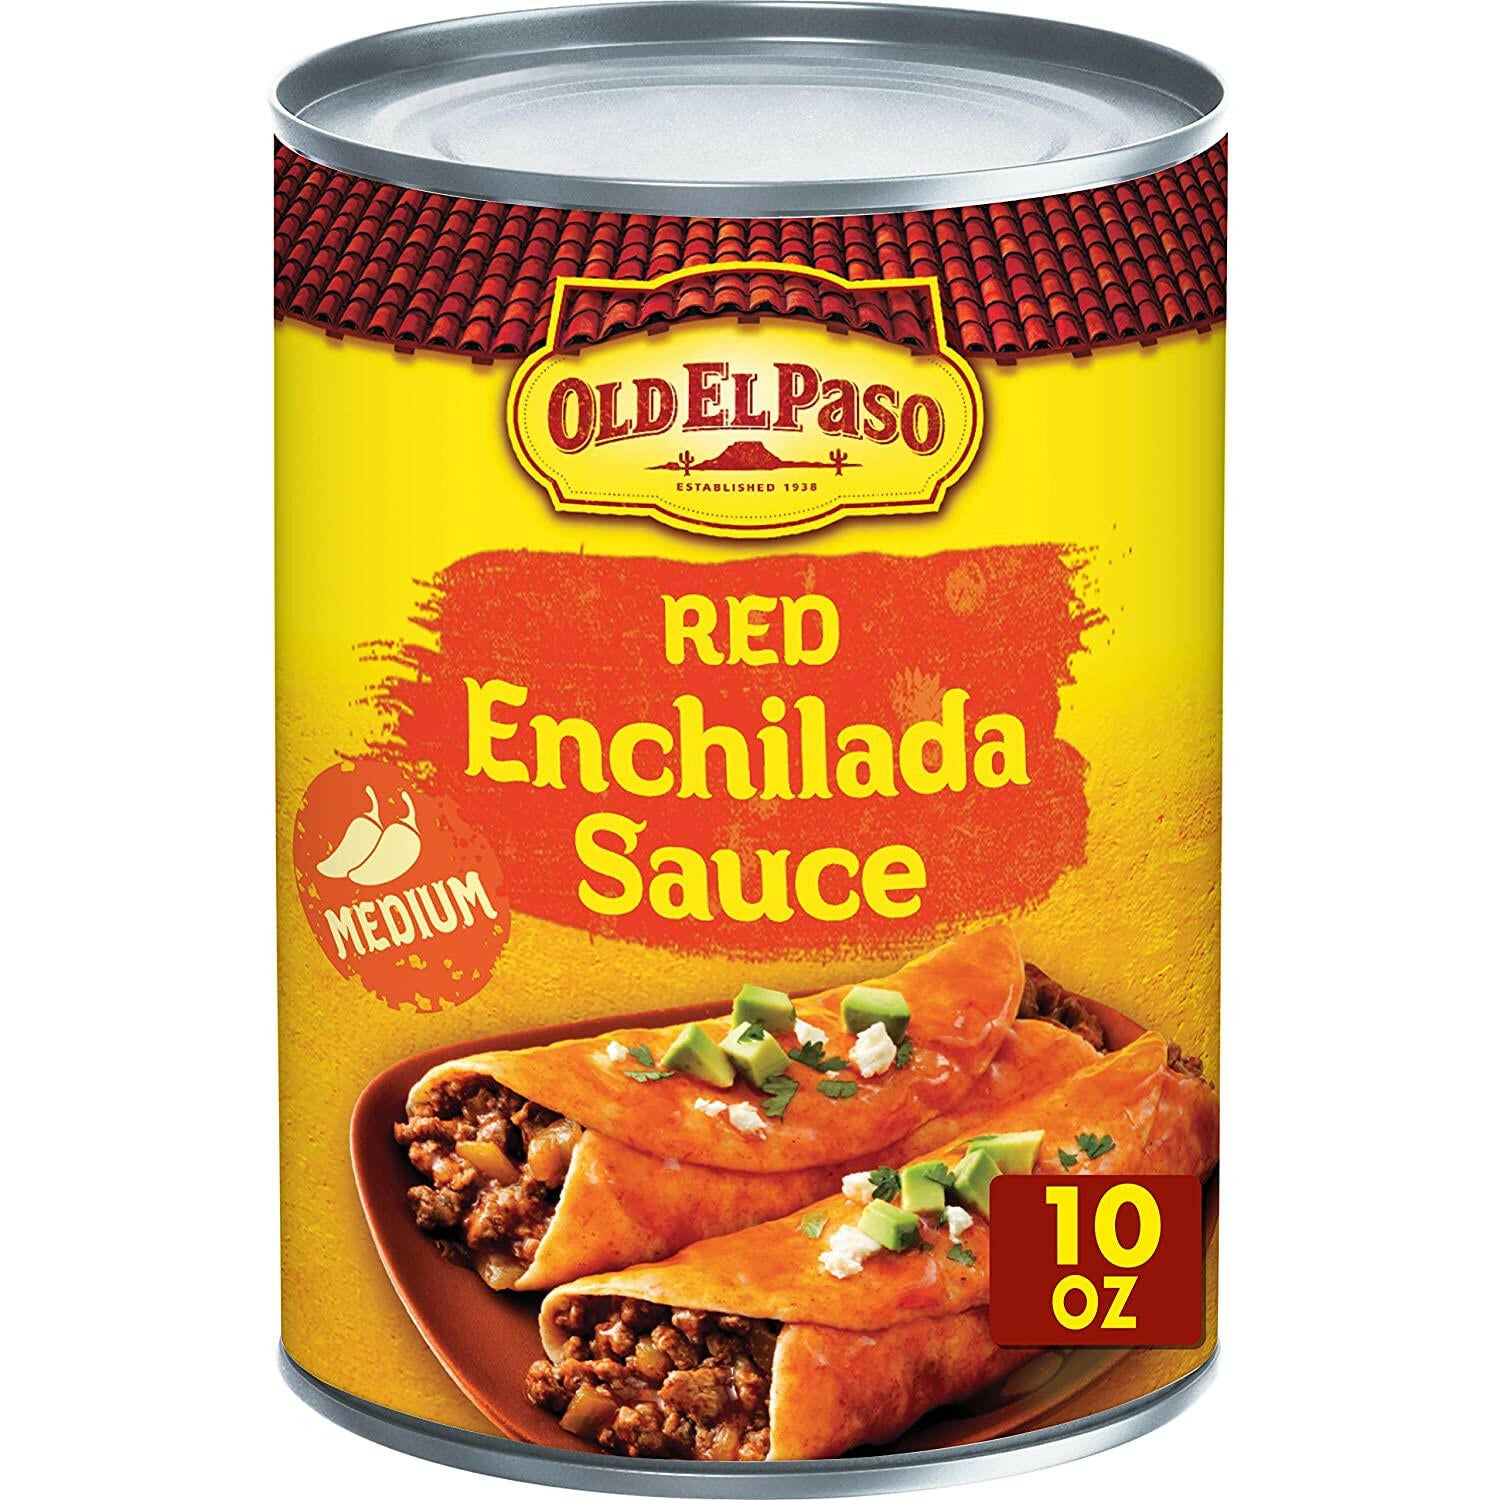 Old El Paso Enchilada Sauce, Medium, red 10 oz.